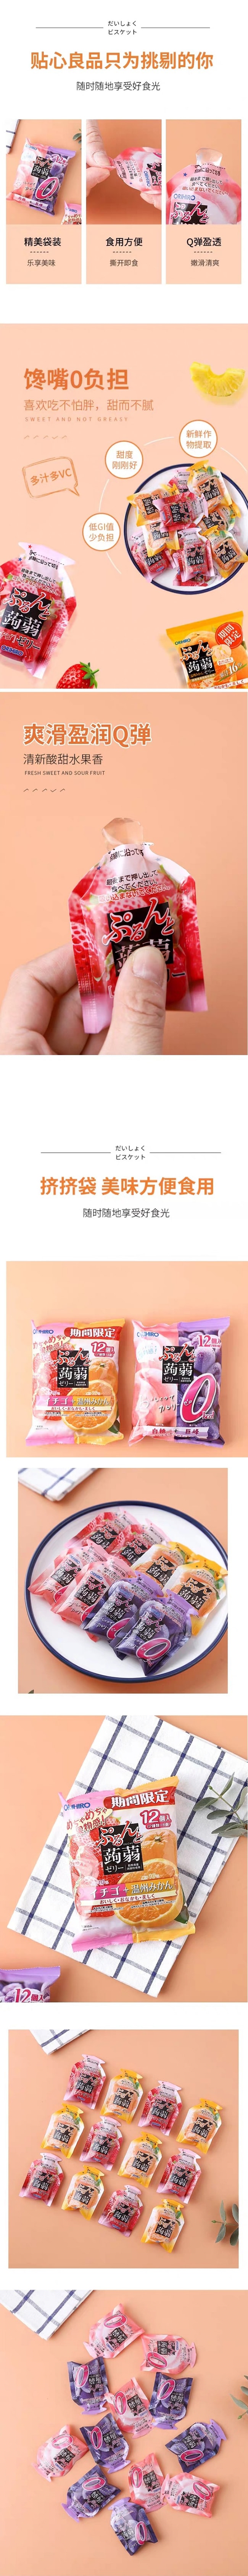 【日本直郵】ORIHIRO立喜樂 魔芋果凍12個/袋 低卡健康果汁果凍蘋果葡萄